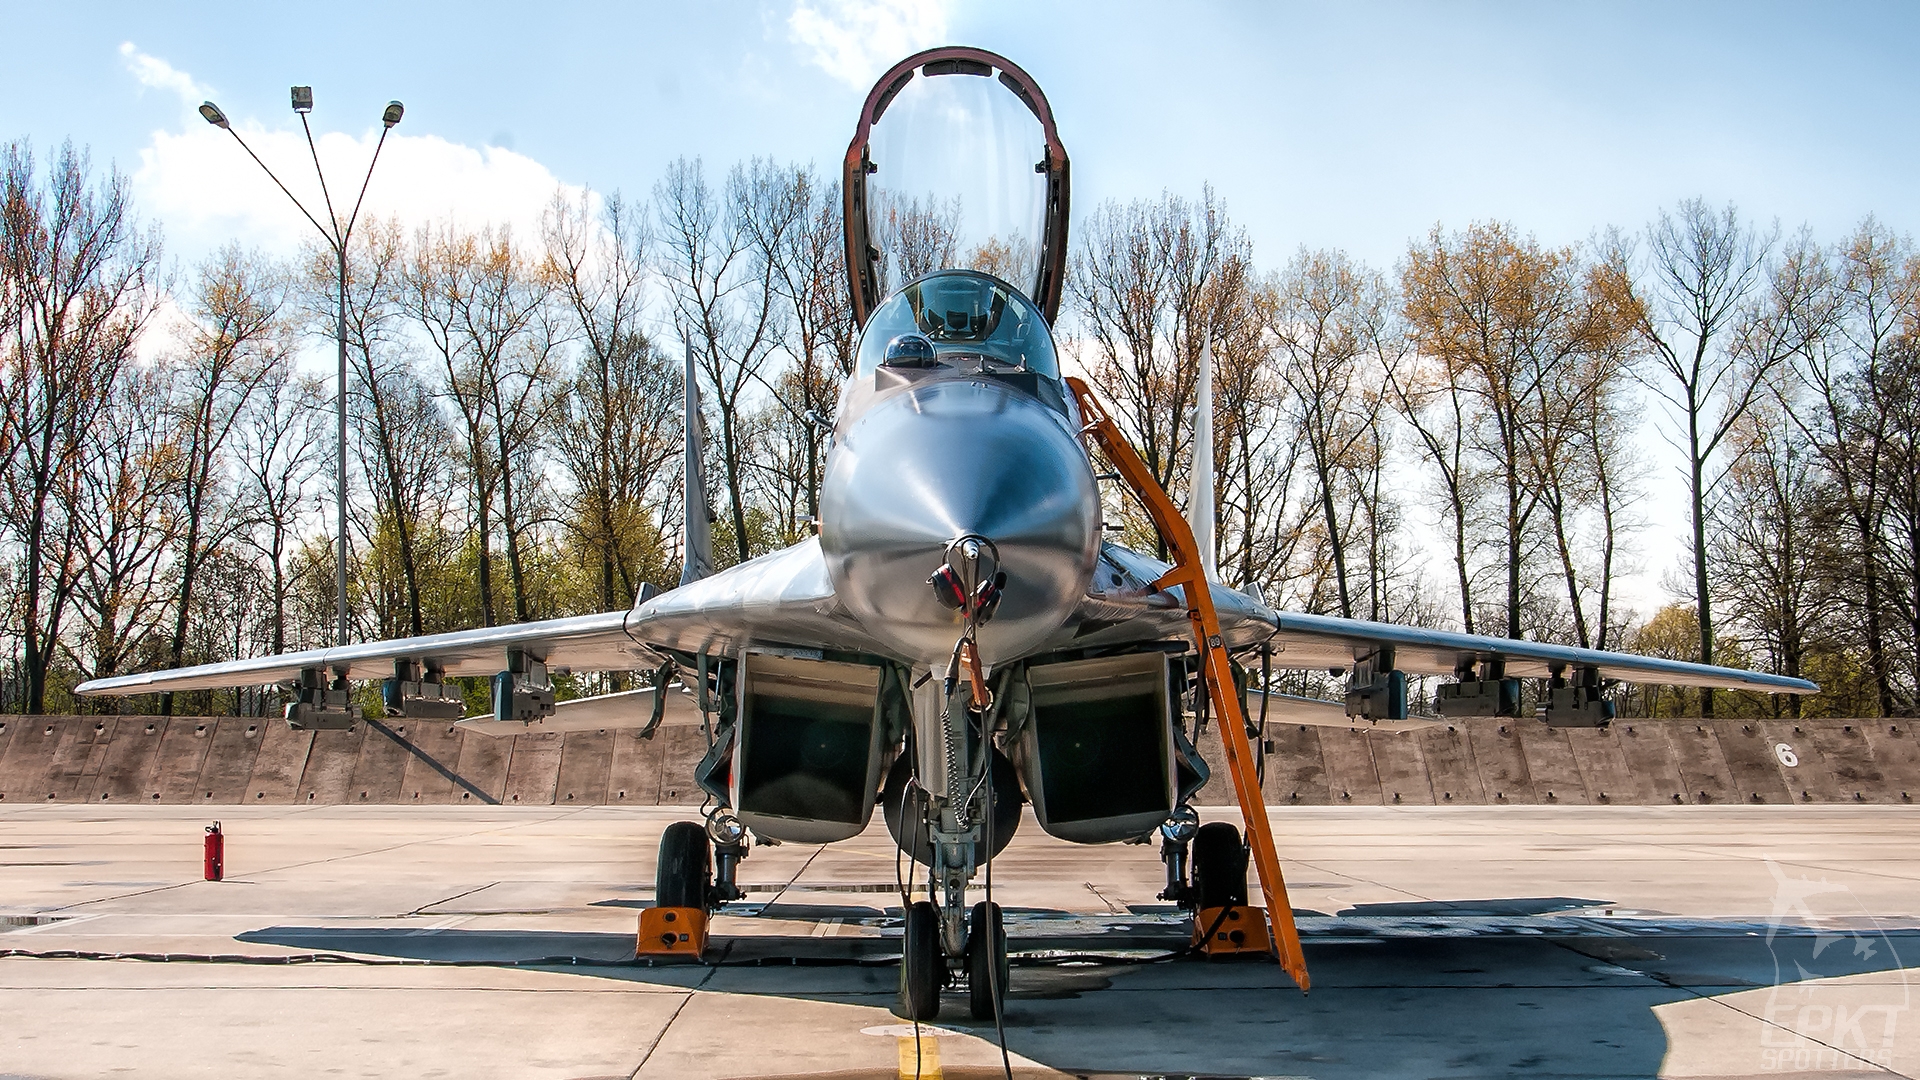 105 - Mikoyan Gurevich MiG-29 A Fulcrum (Poland - Air Force) / 23 Baza Lotnictwa Taktycznego - Minsk Mazowiecki Poland [EPMM/]